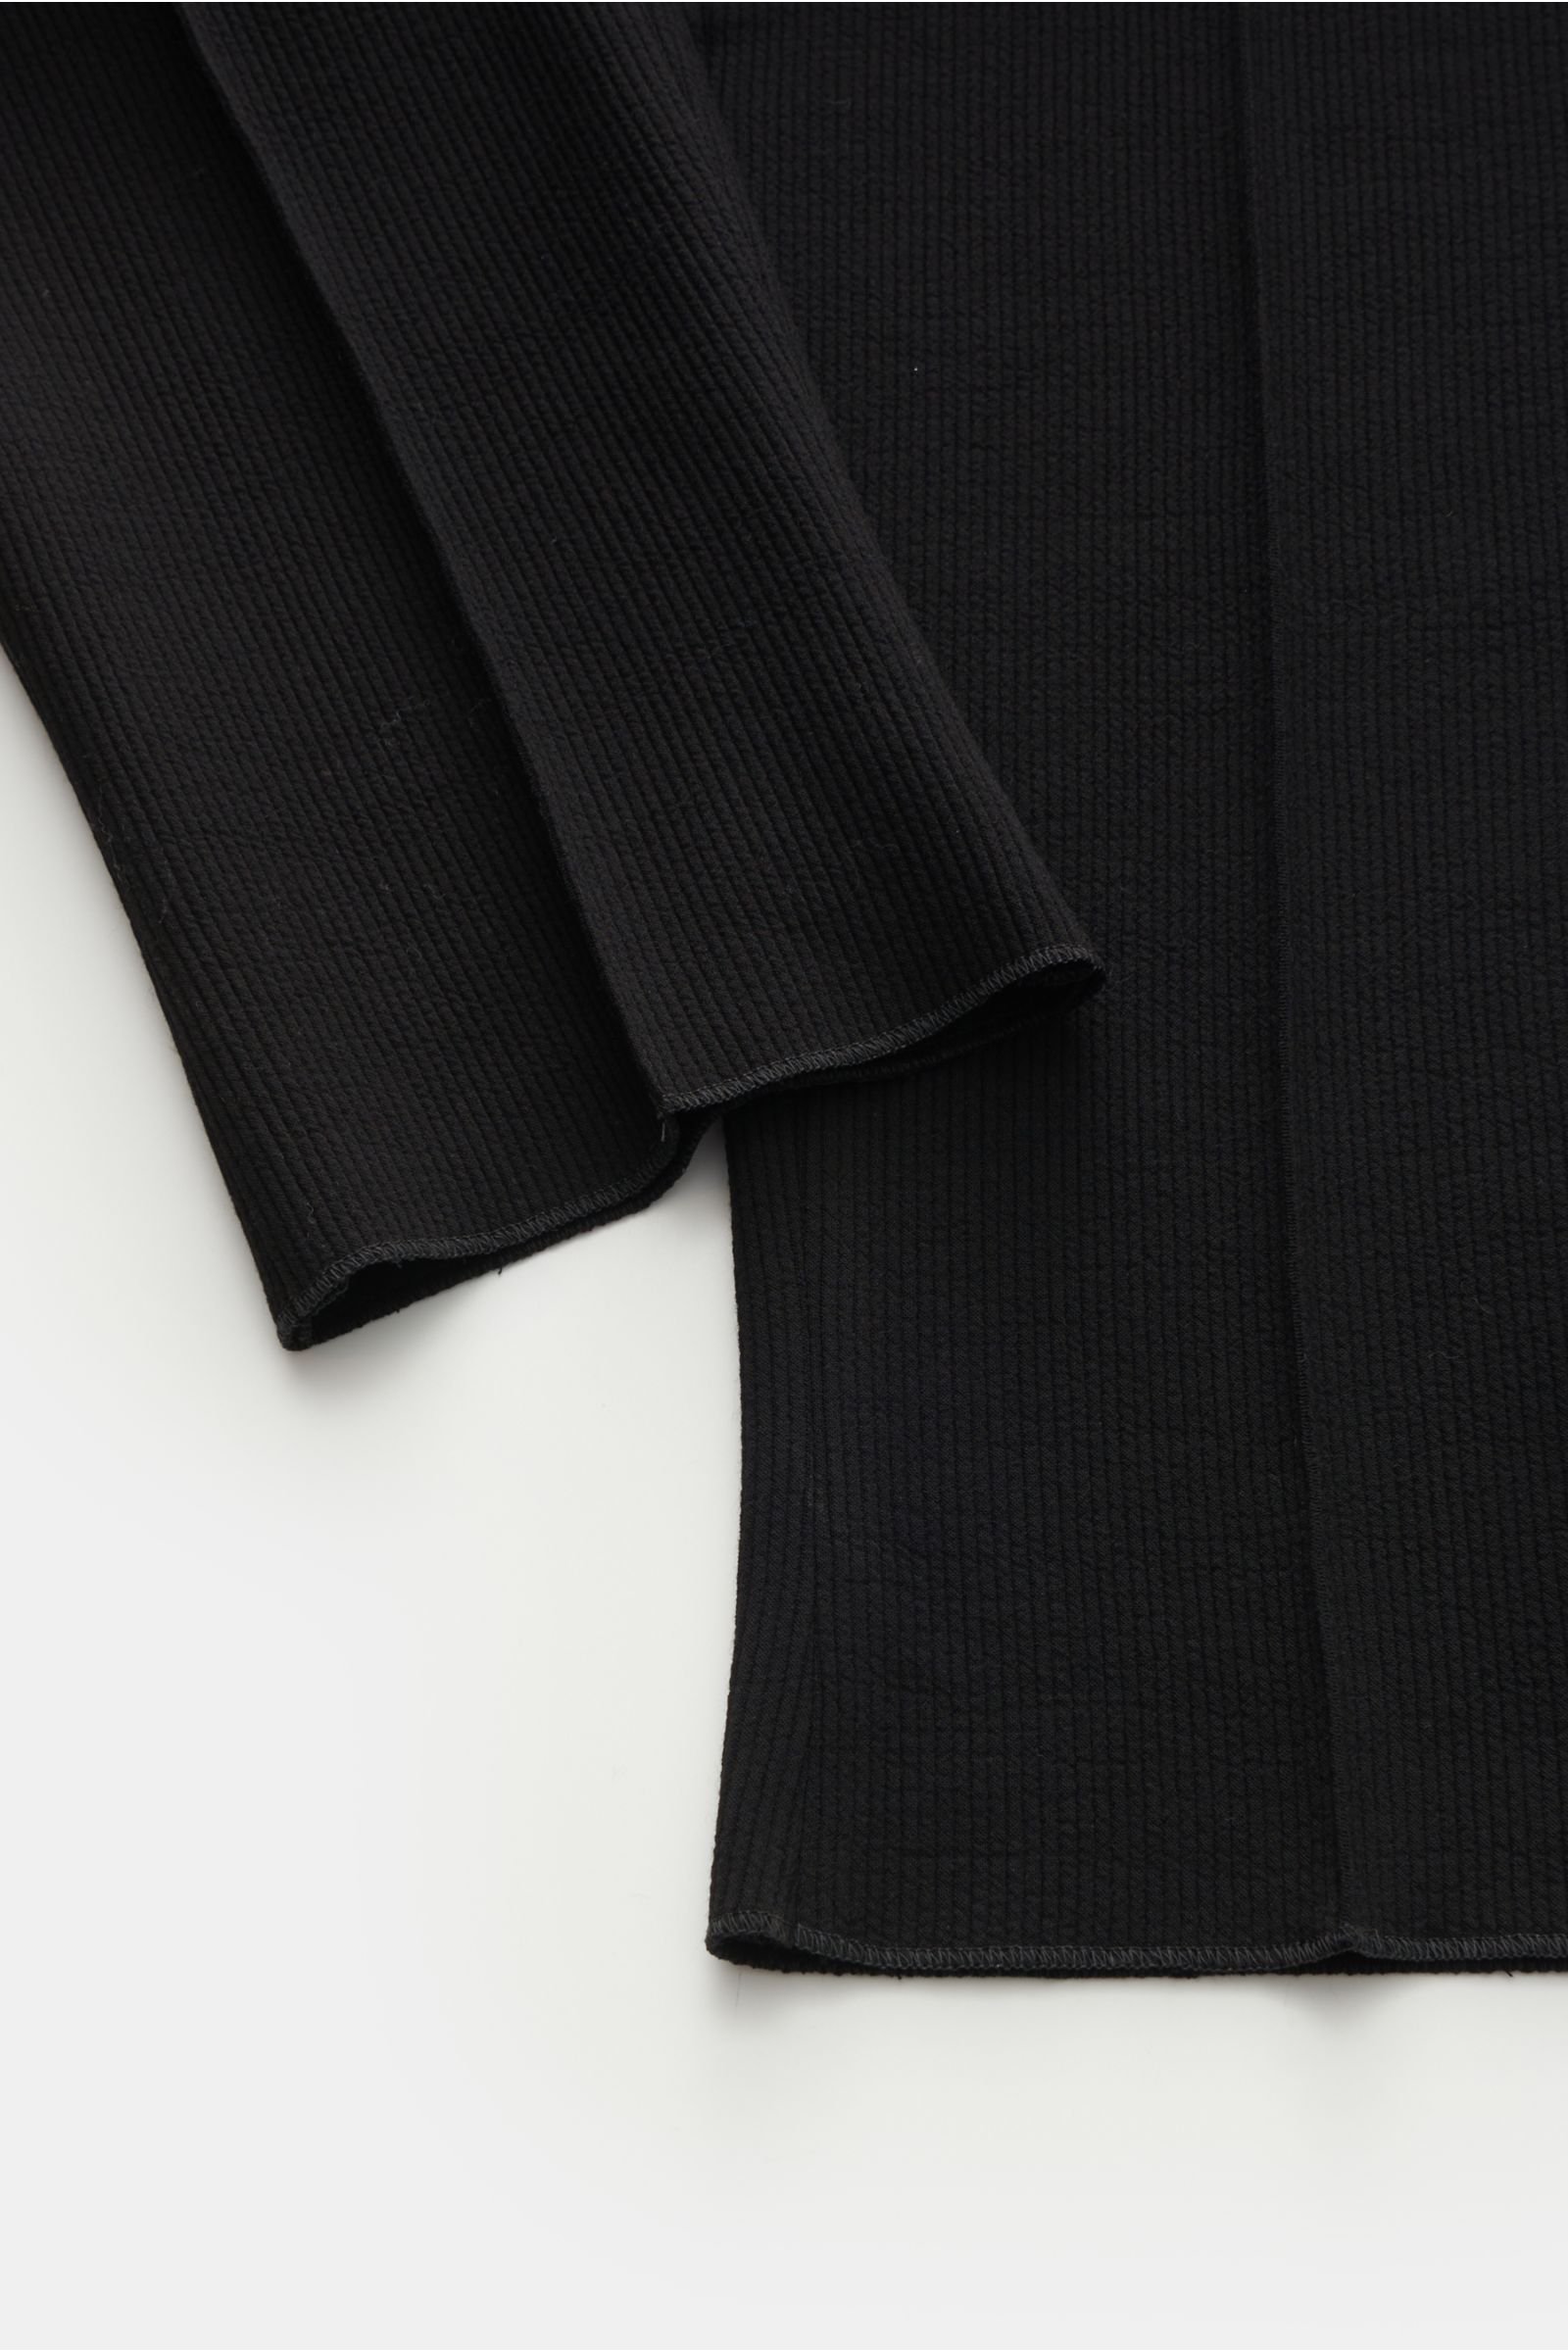 Emporio Armani abstract-check Print Trousers - Farfetch-demhanvico.com.vn